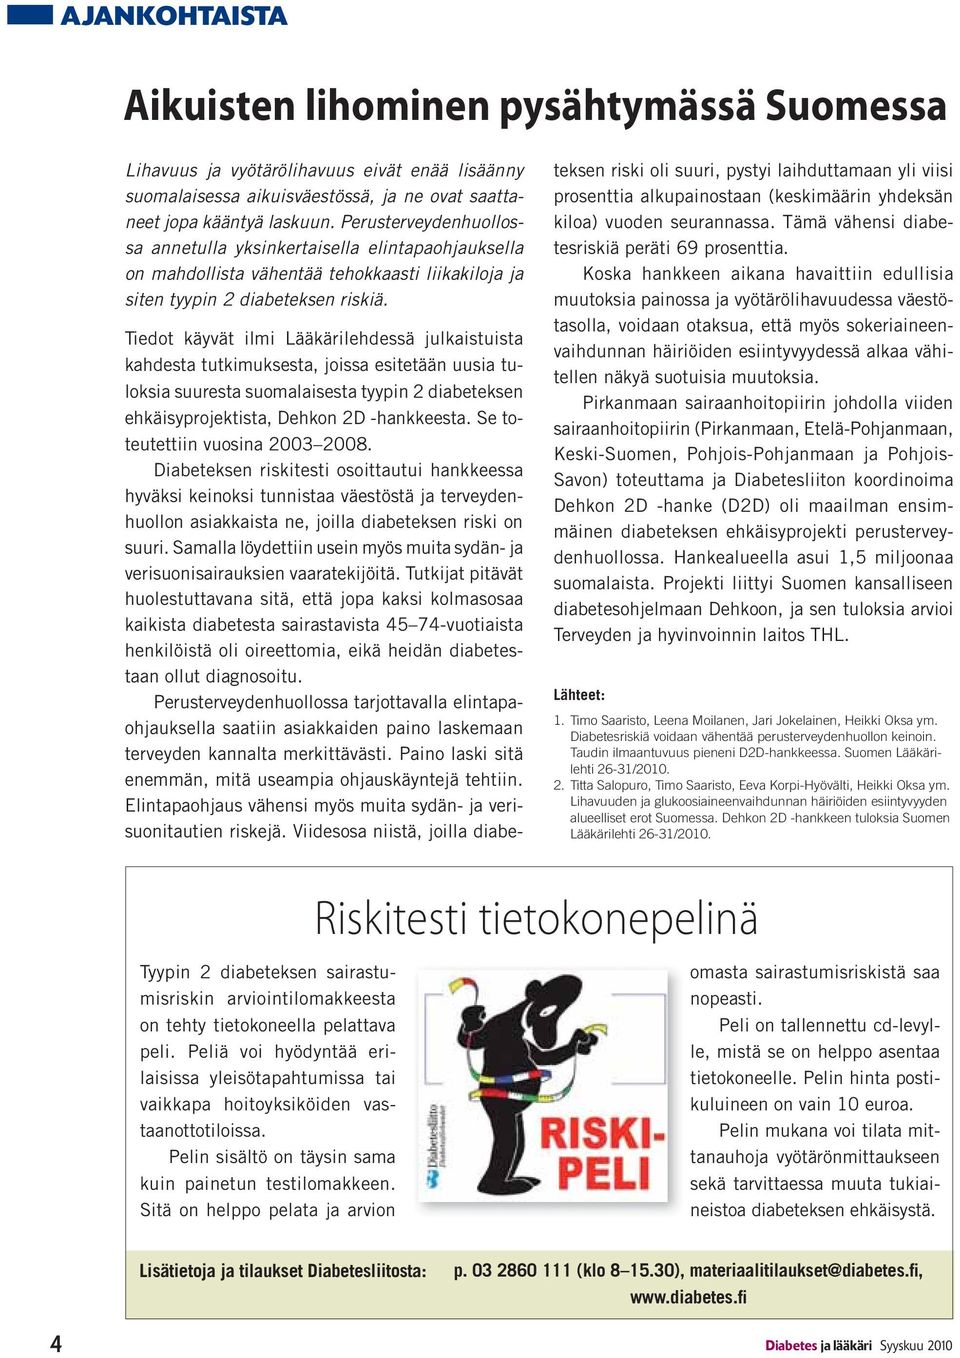 Tiedot käyvät ilmi Lääkärilehdessä julkaistuista kahdesta tutkimuksesta, joissa esitetään uusia tuloksia suuresta suomalaisesta tyypin 2 diabeteksen ehkäisyprojektista, Dehkon 2D -hankkeesta.